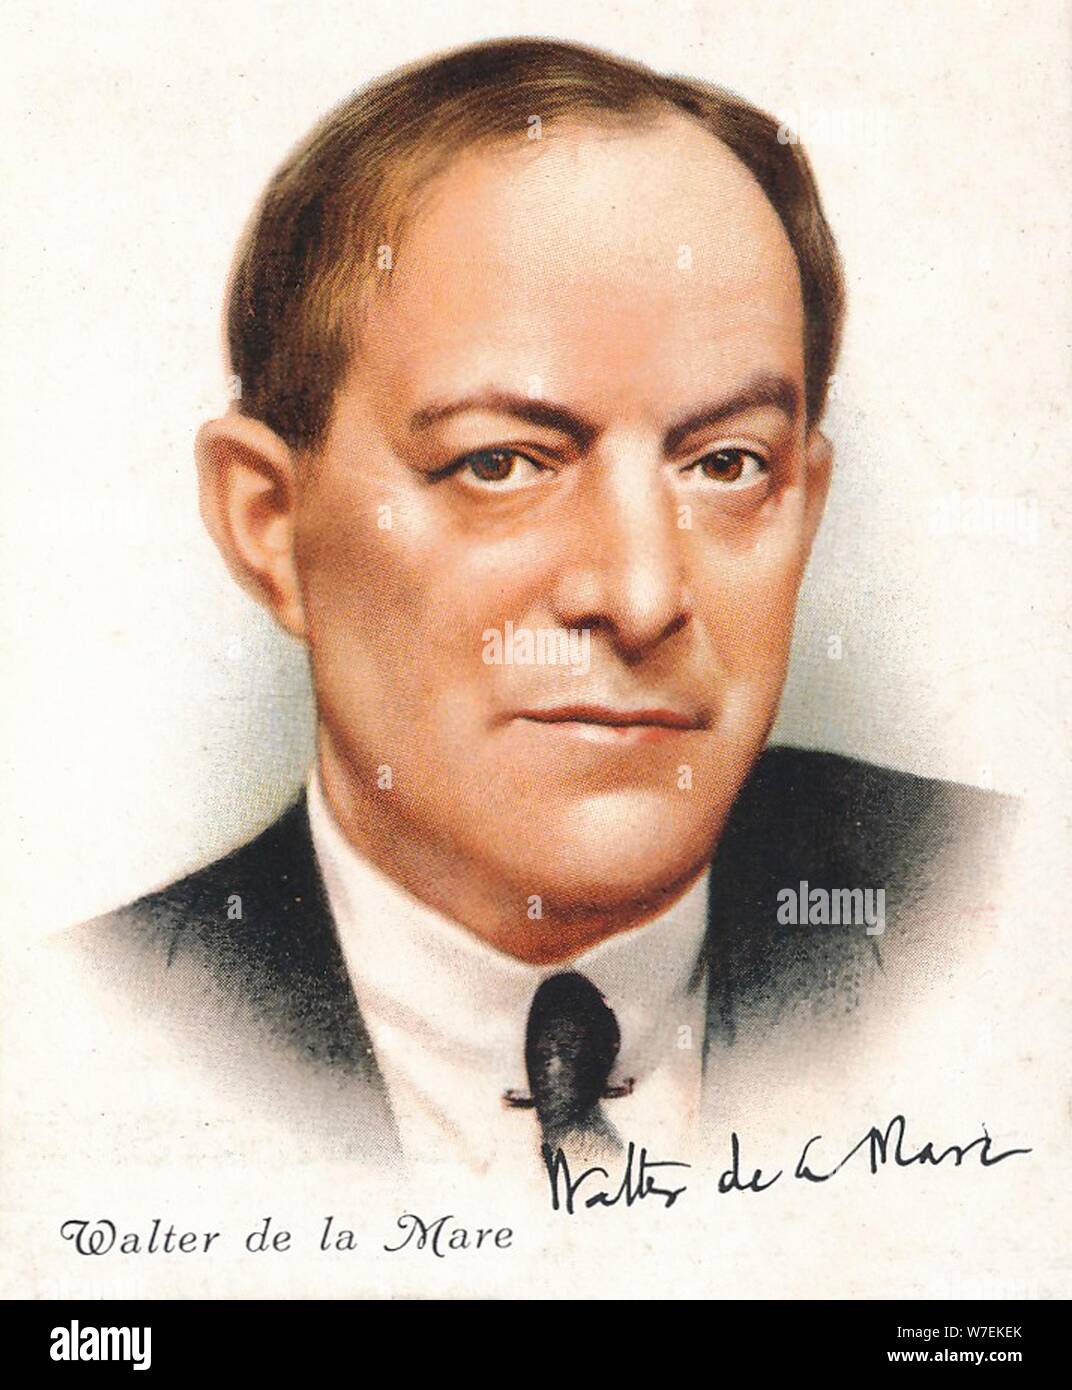 Walter de la Mare, 1937. Artist: Walter de la Mare Stock Photo